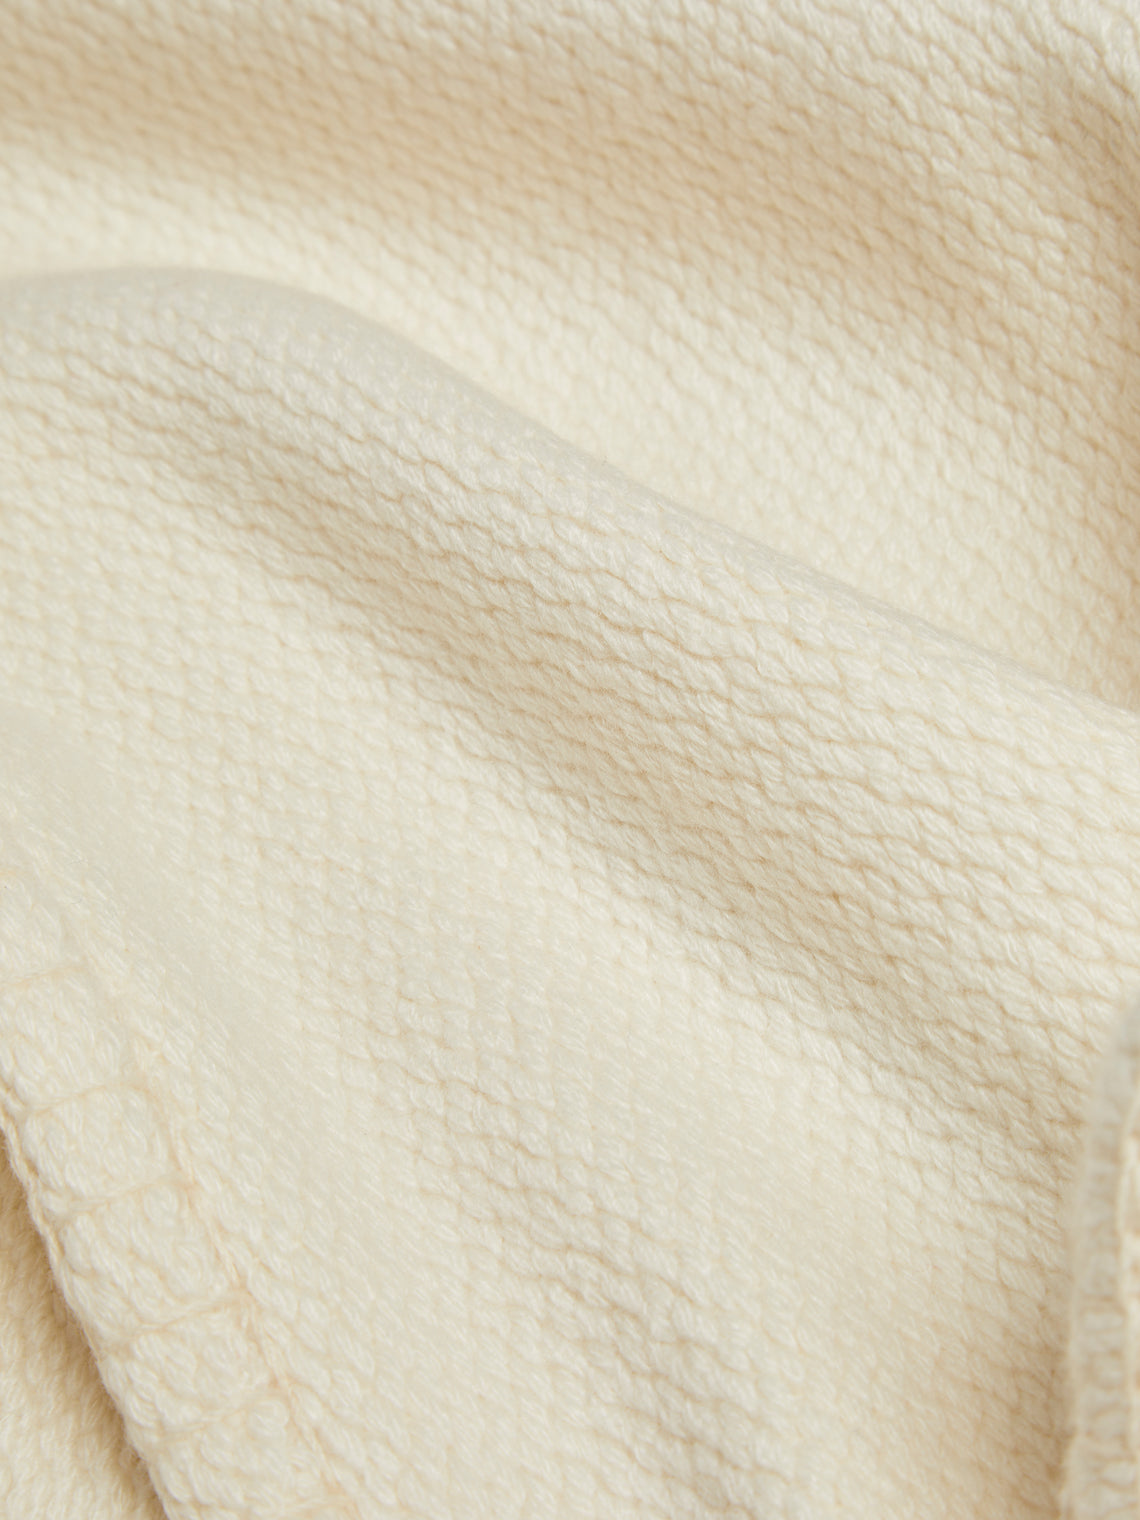 Rose Uniacke - Hand-Dyed Cashmere Large Blanket - Cream - ABASK